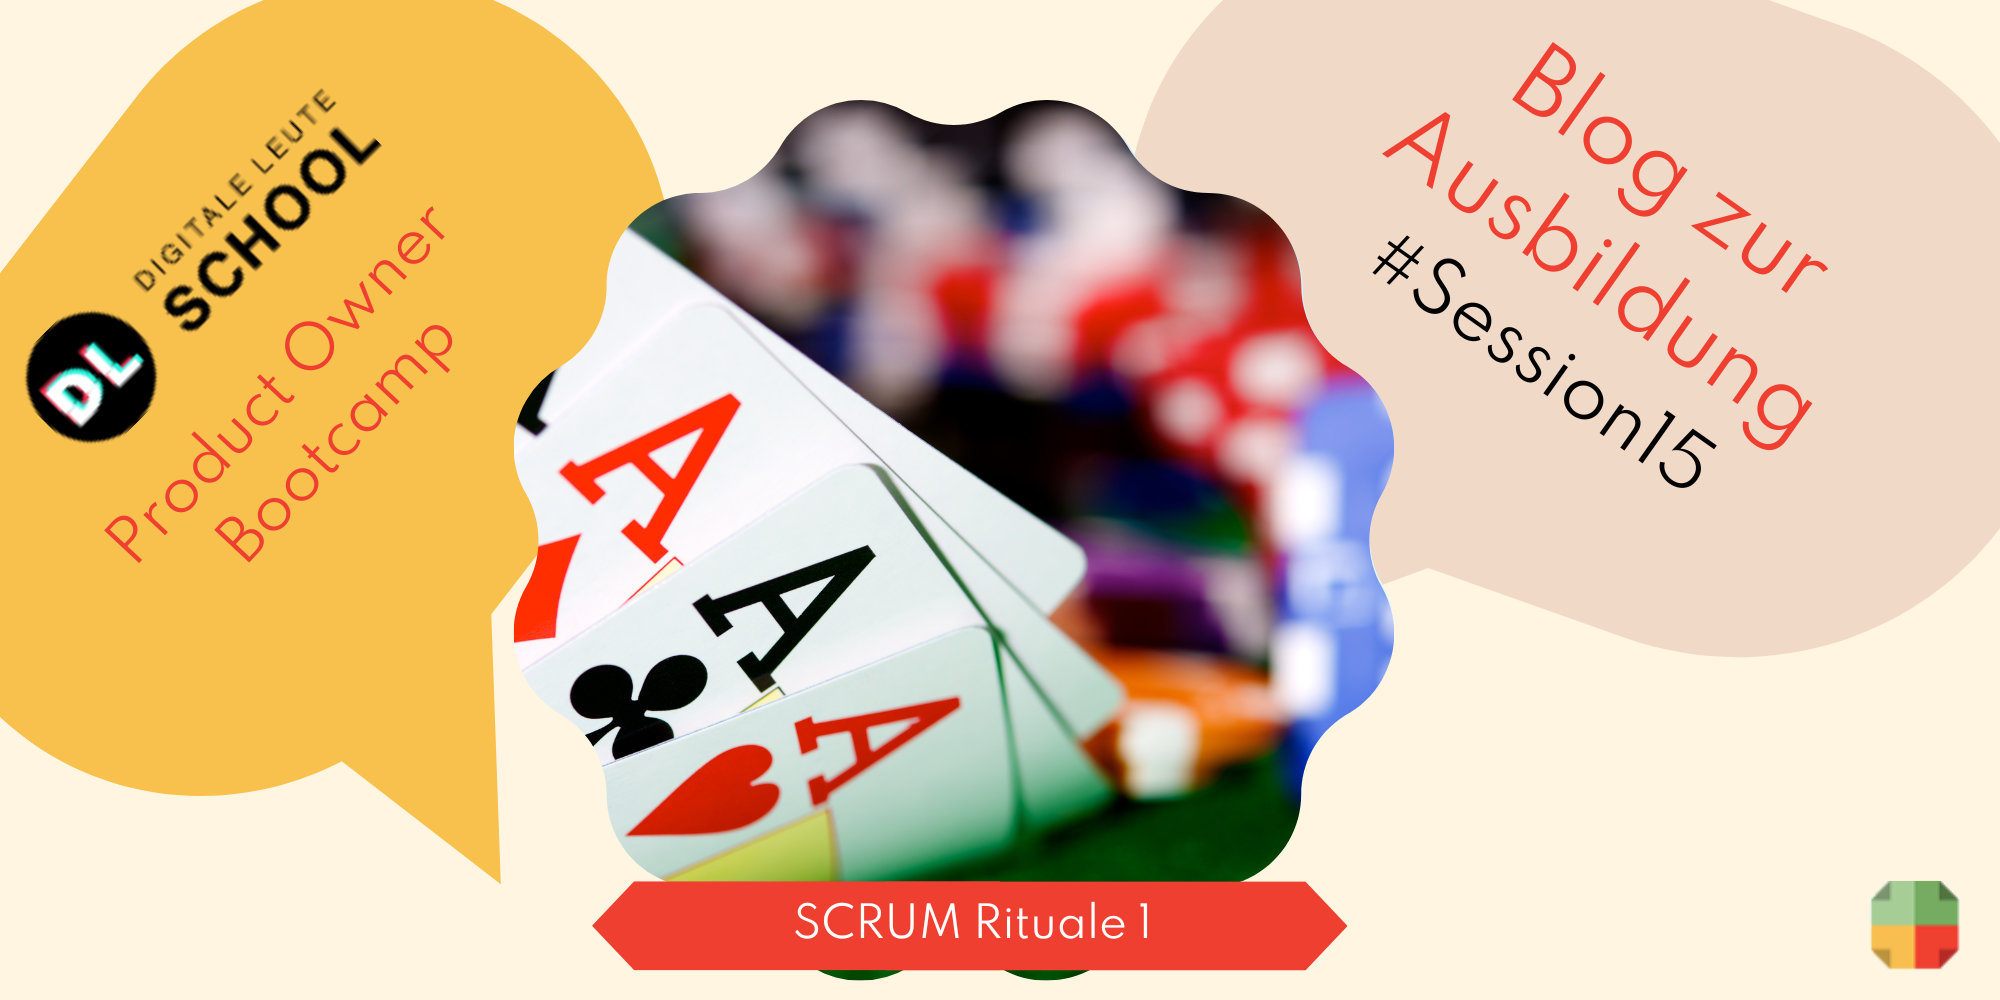 Der Planning Poker ist ein Tool, welches häufig bei SCRUM eingesetzt wird.